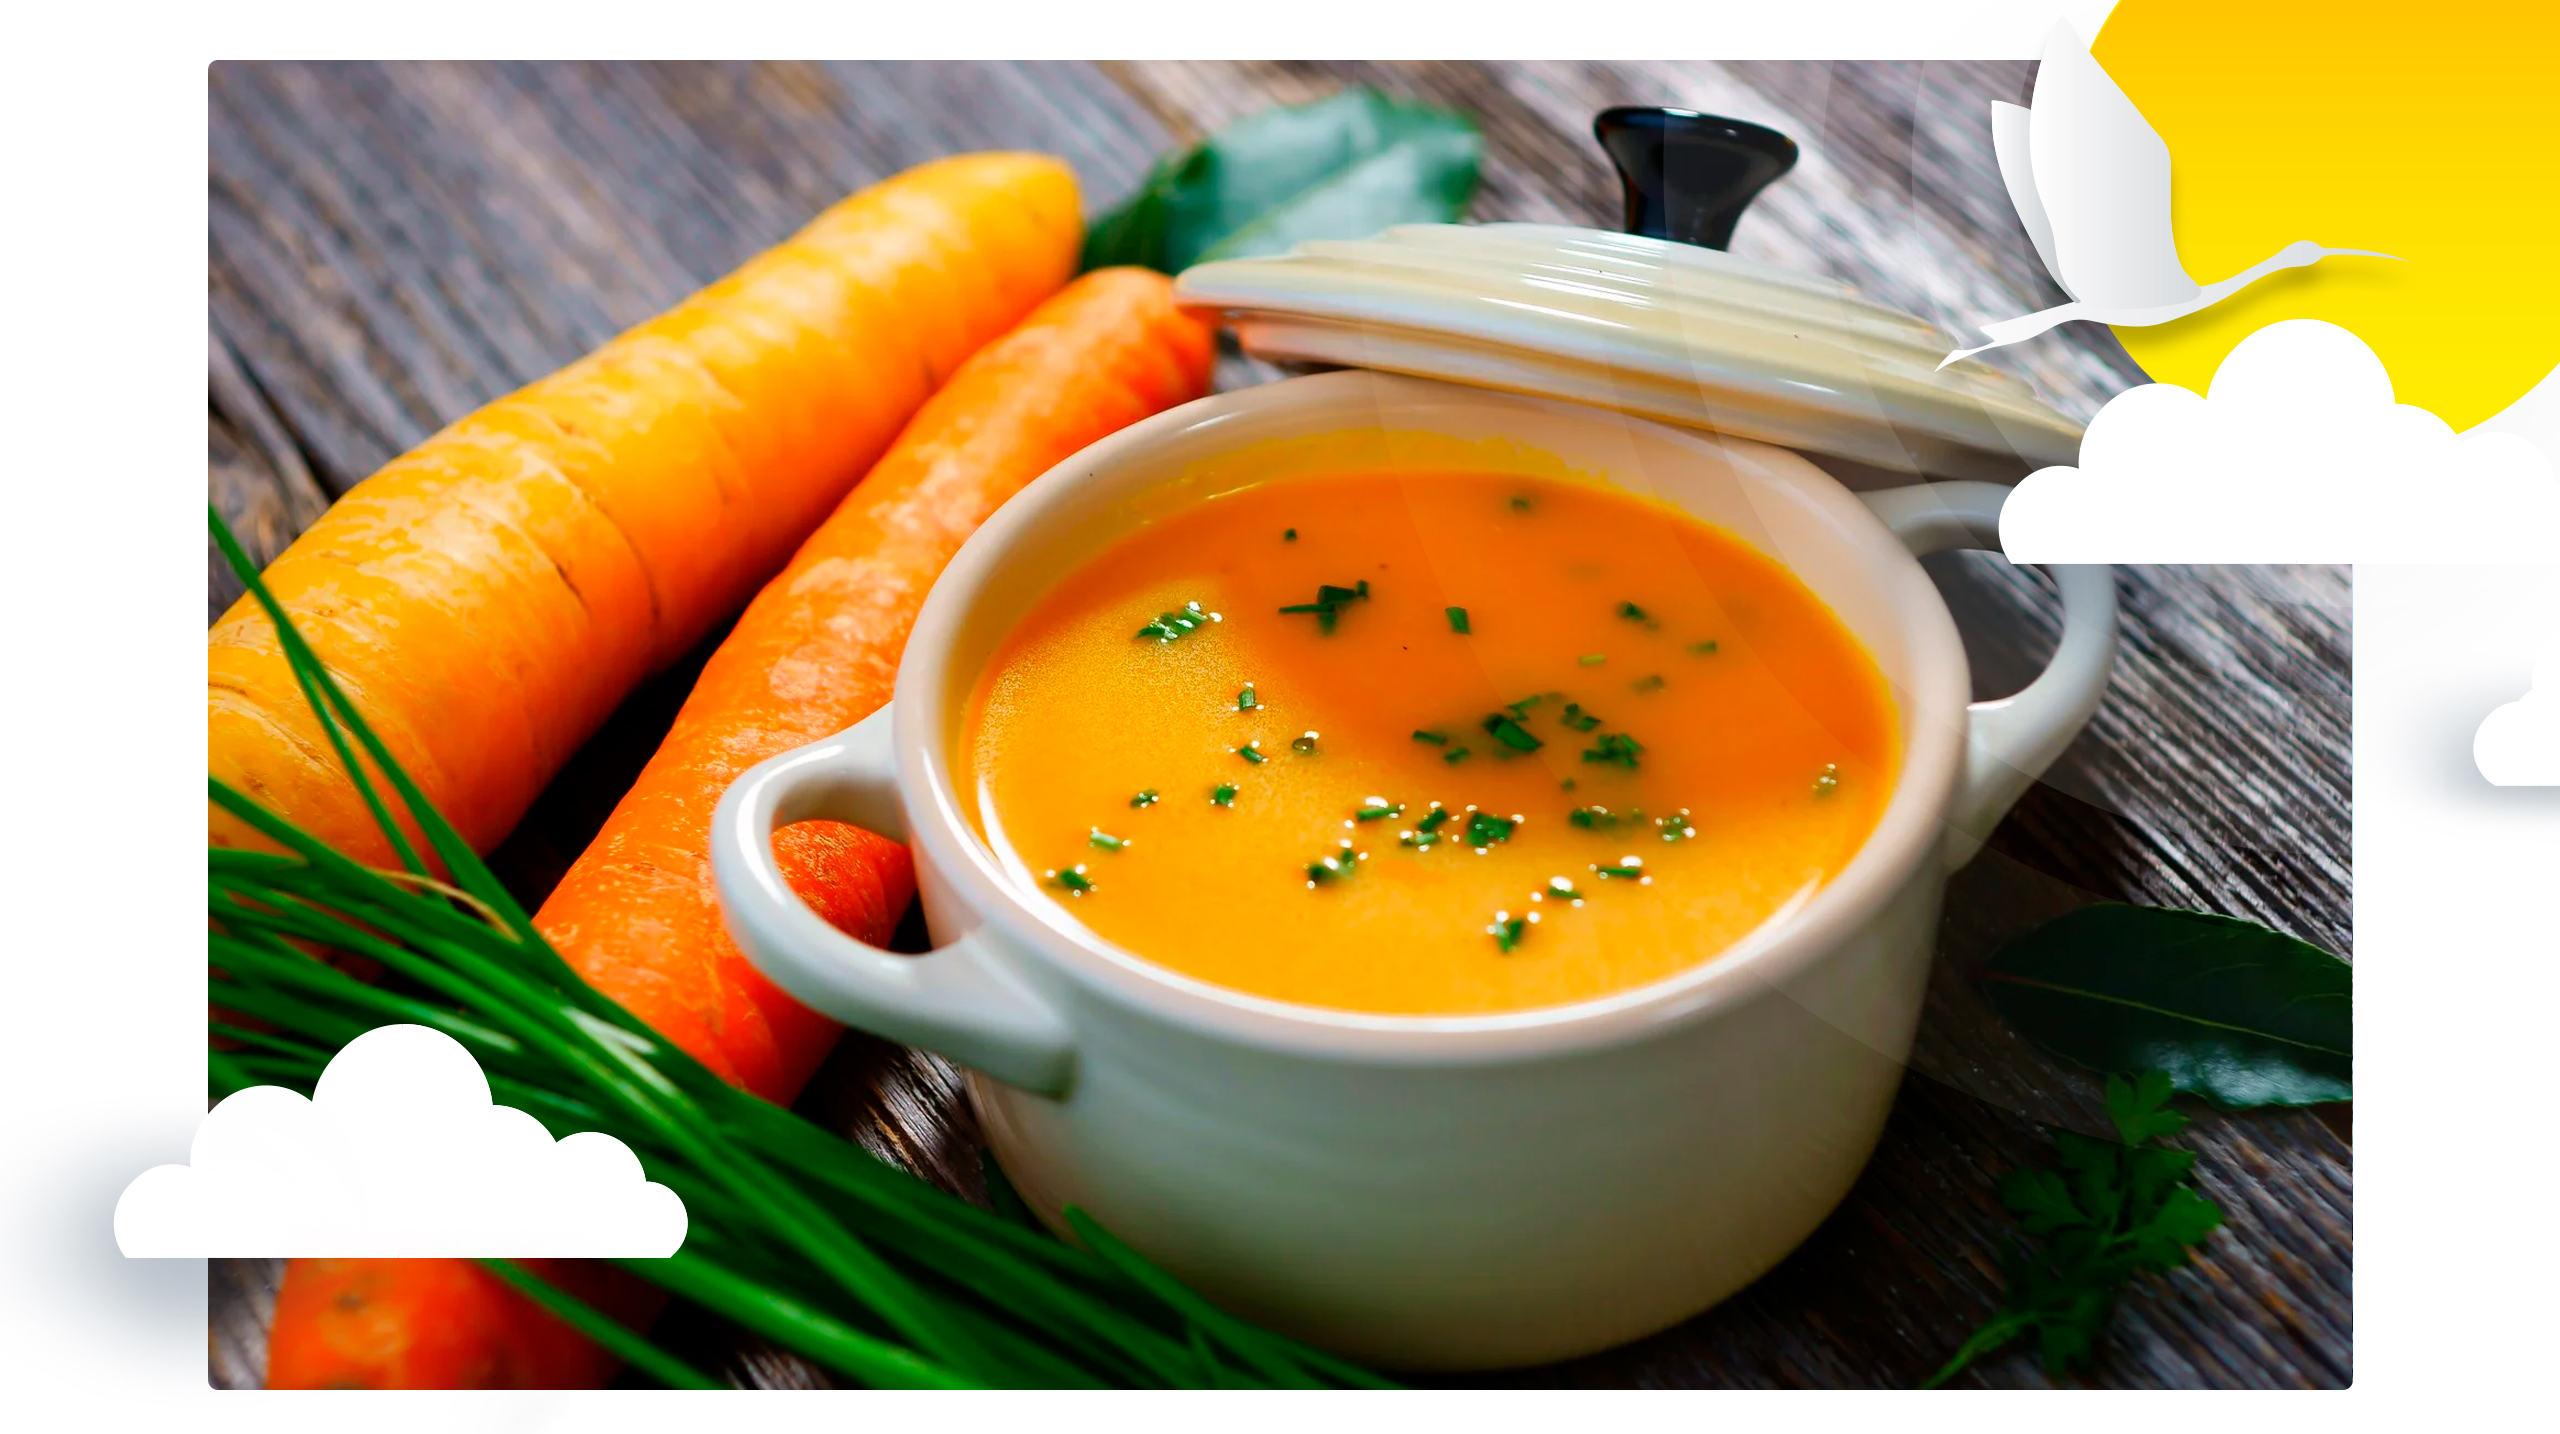 Tá chovendo sopa e de cenoura!